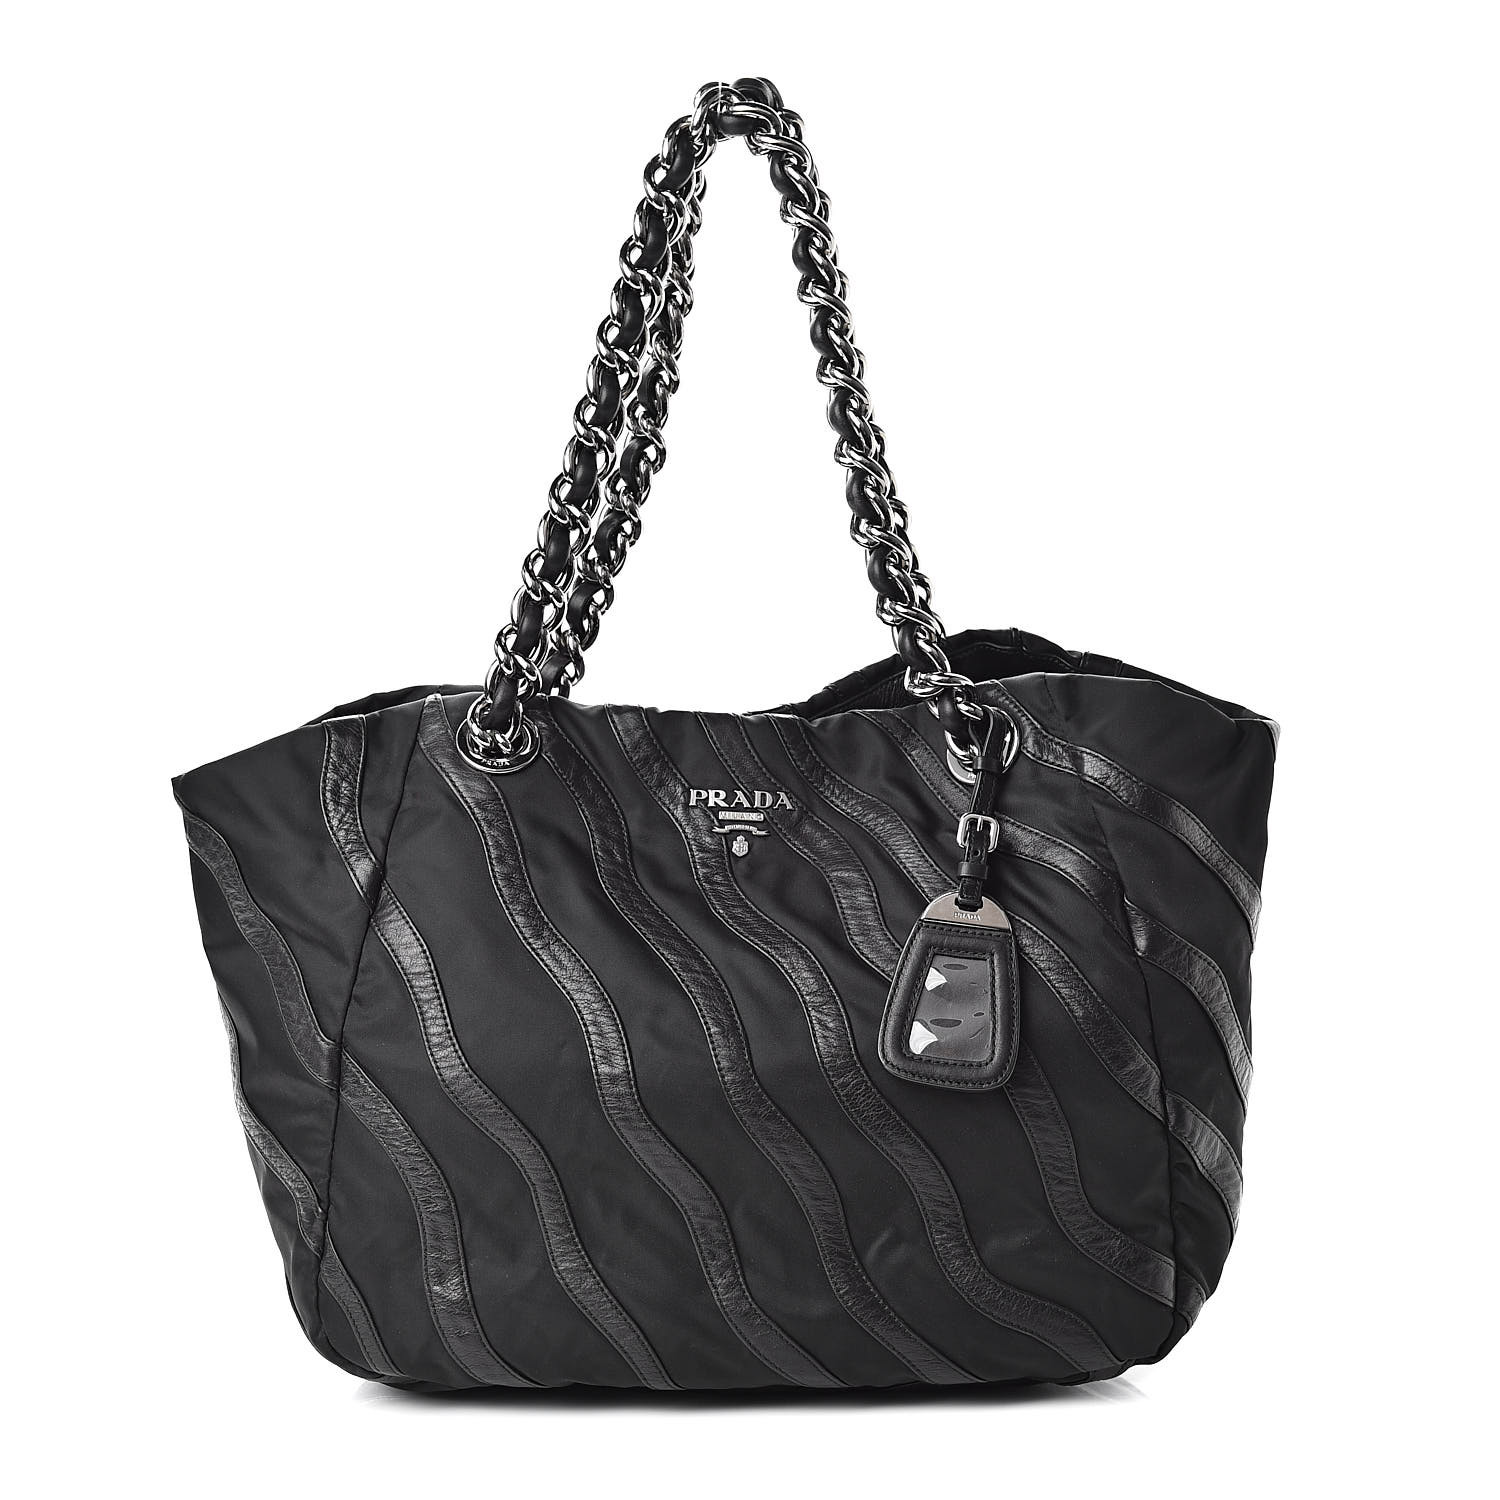 PRADA Tessuto Nylon Calfskin Chain Shoulder Bag Black 507721